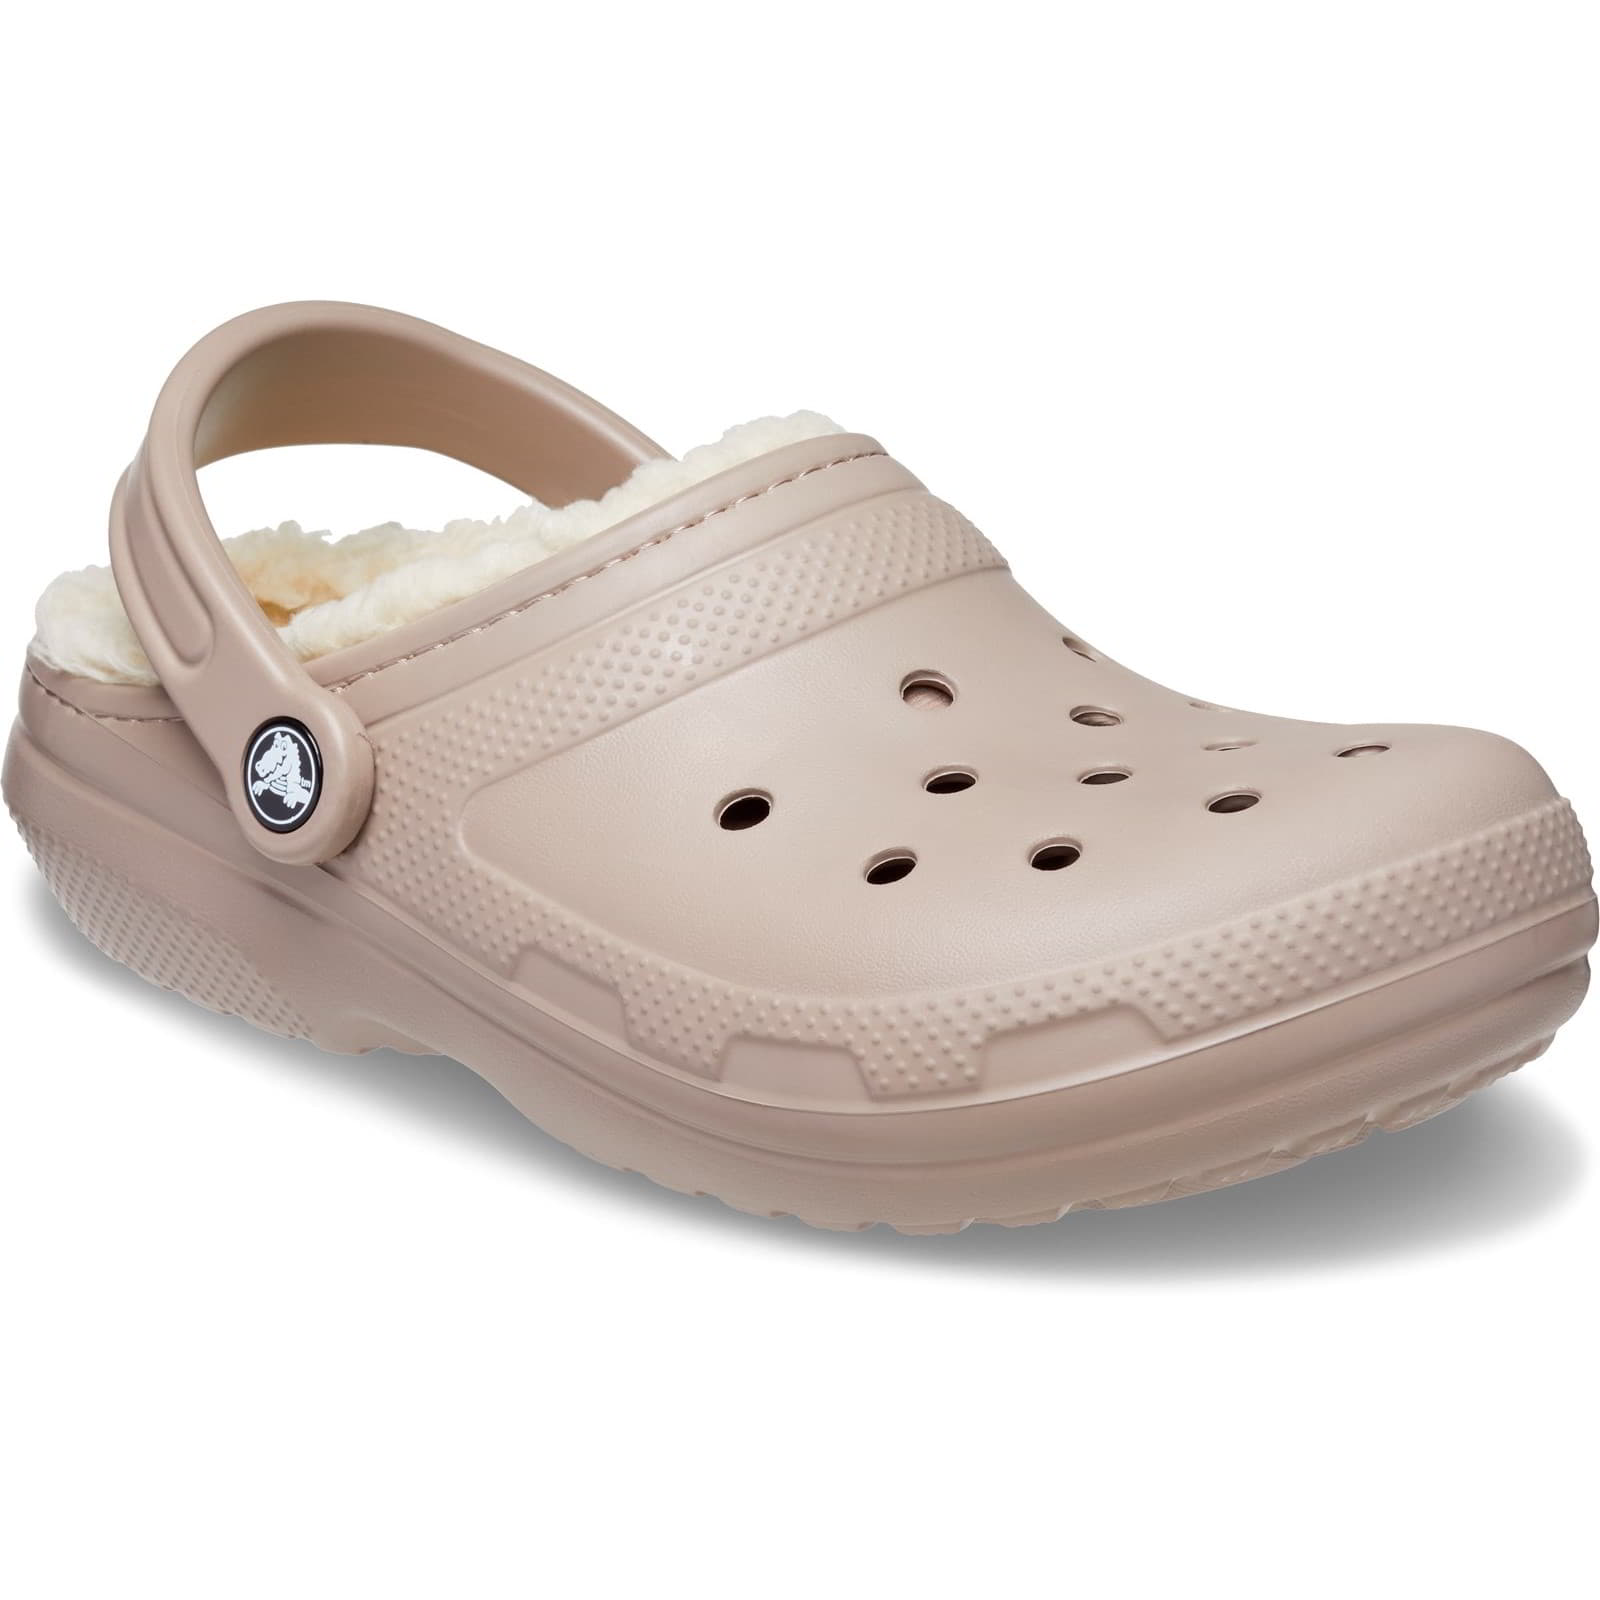 Crocs Men's Women's Classic Lined Clog Warm Slip On Slippers Shoes - UK M9-W10 / EU 43-44 / US M10-W12